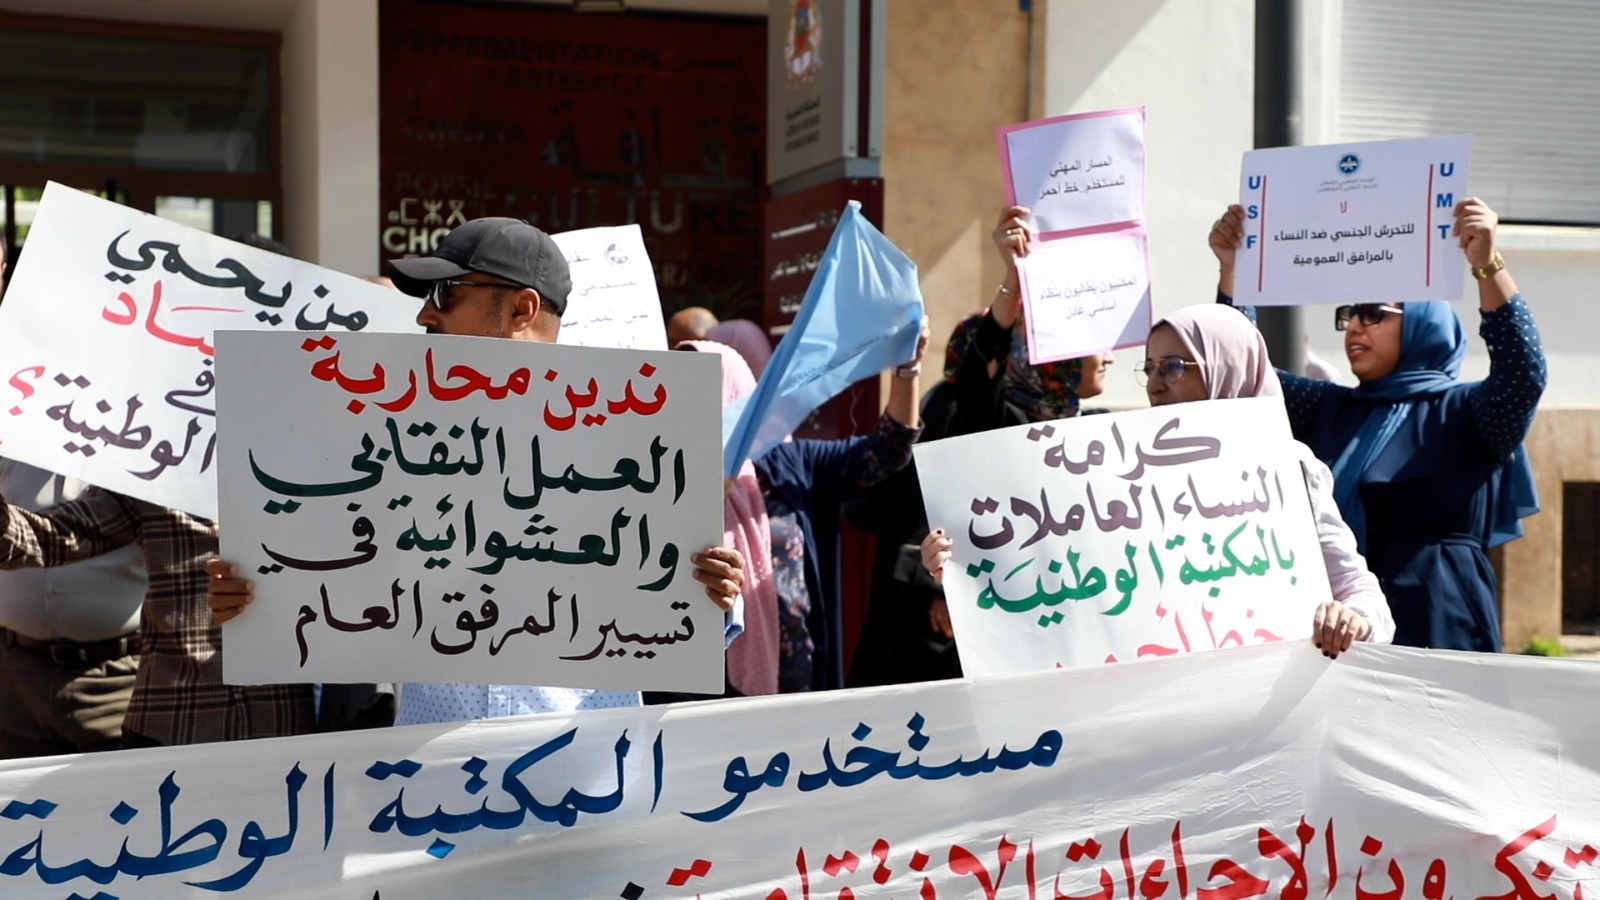 مستخدمو المكتبة الوطنية يحتجون بسبب تعسفات المدير وصمت وزارة الثقافة على خروقاته